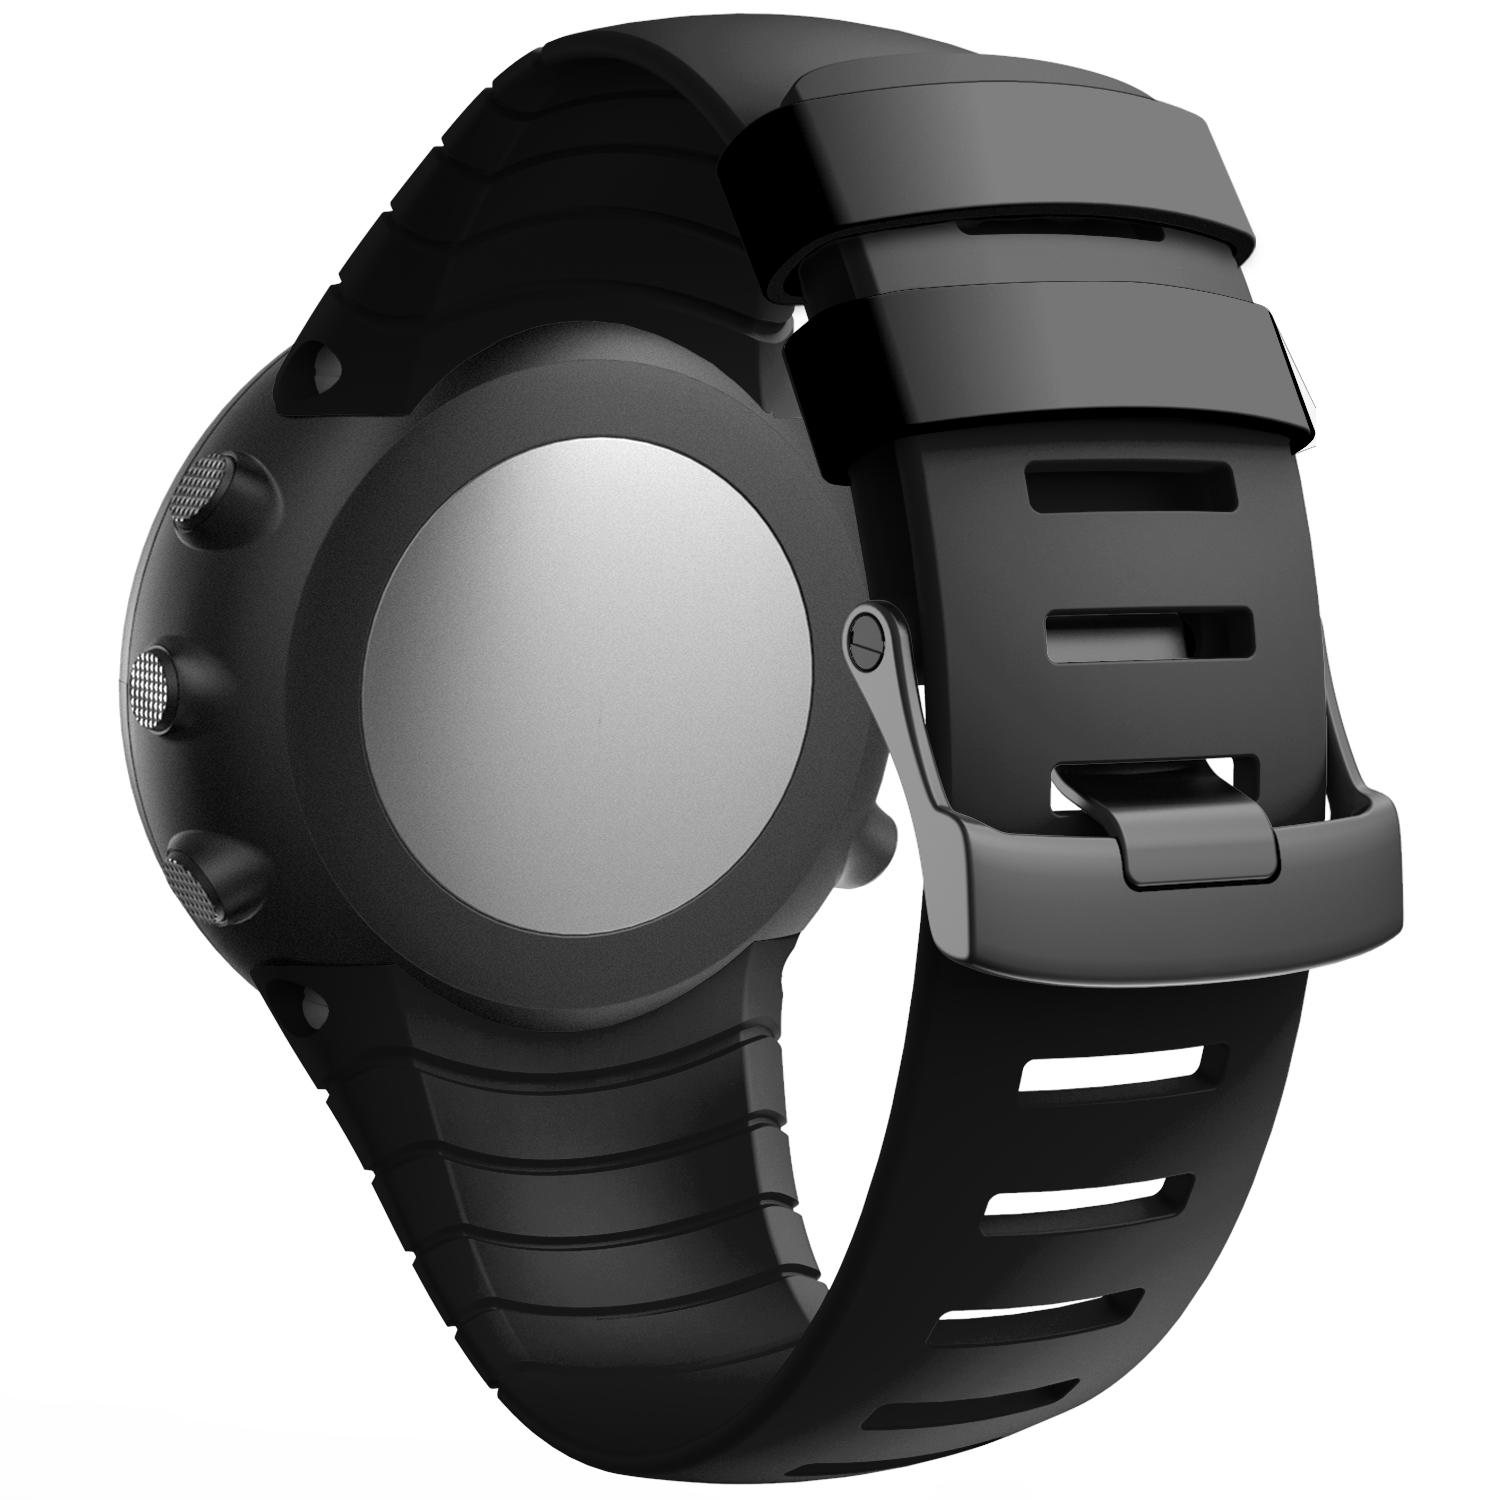 Tpu Horlogebandje Voor Suunto Core Vervanging Horlogebanden Armband Blet Voor Suunto Core Smartwatches Horloge Accessoires